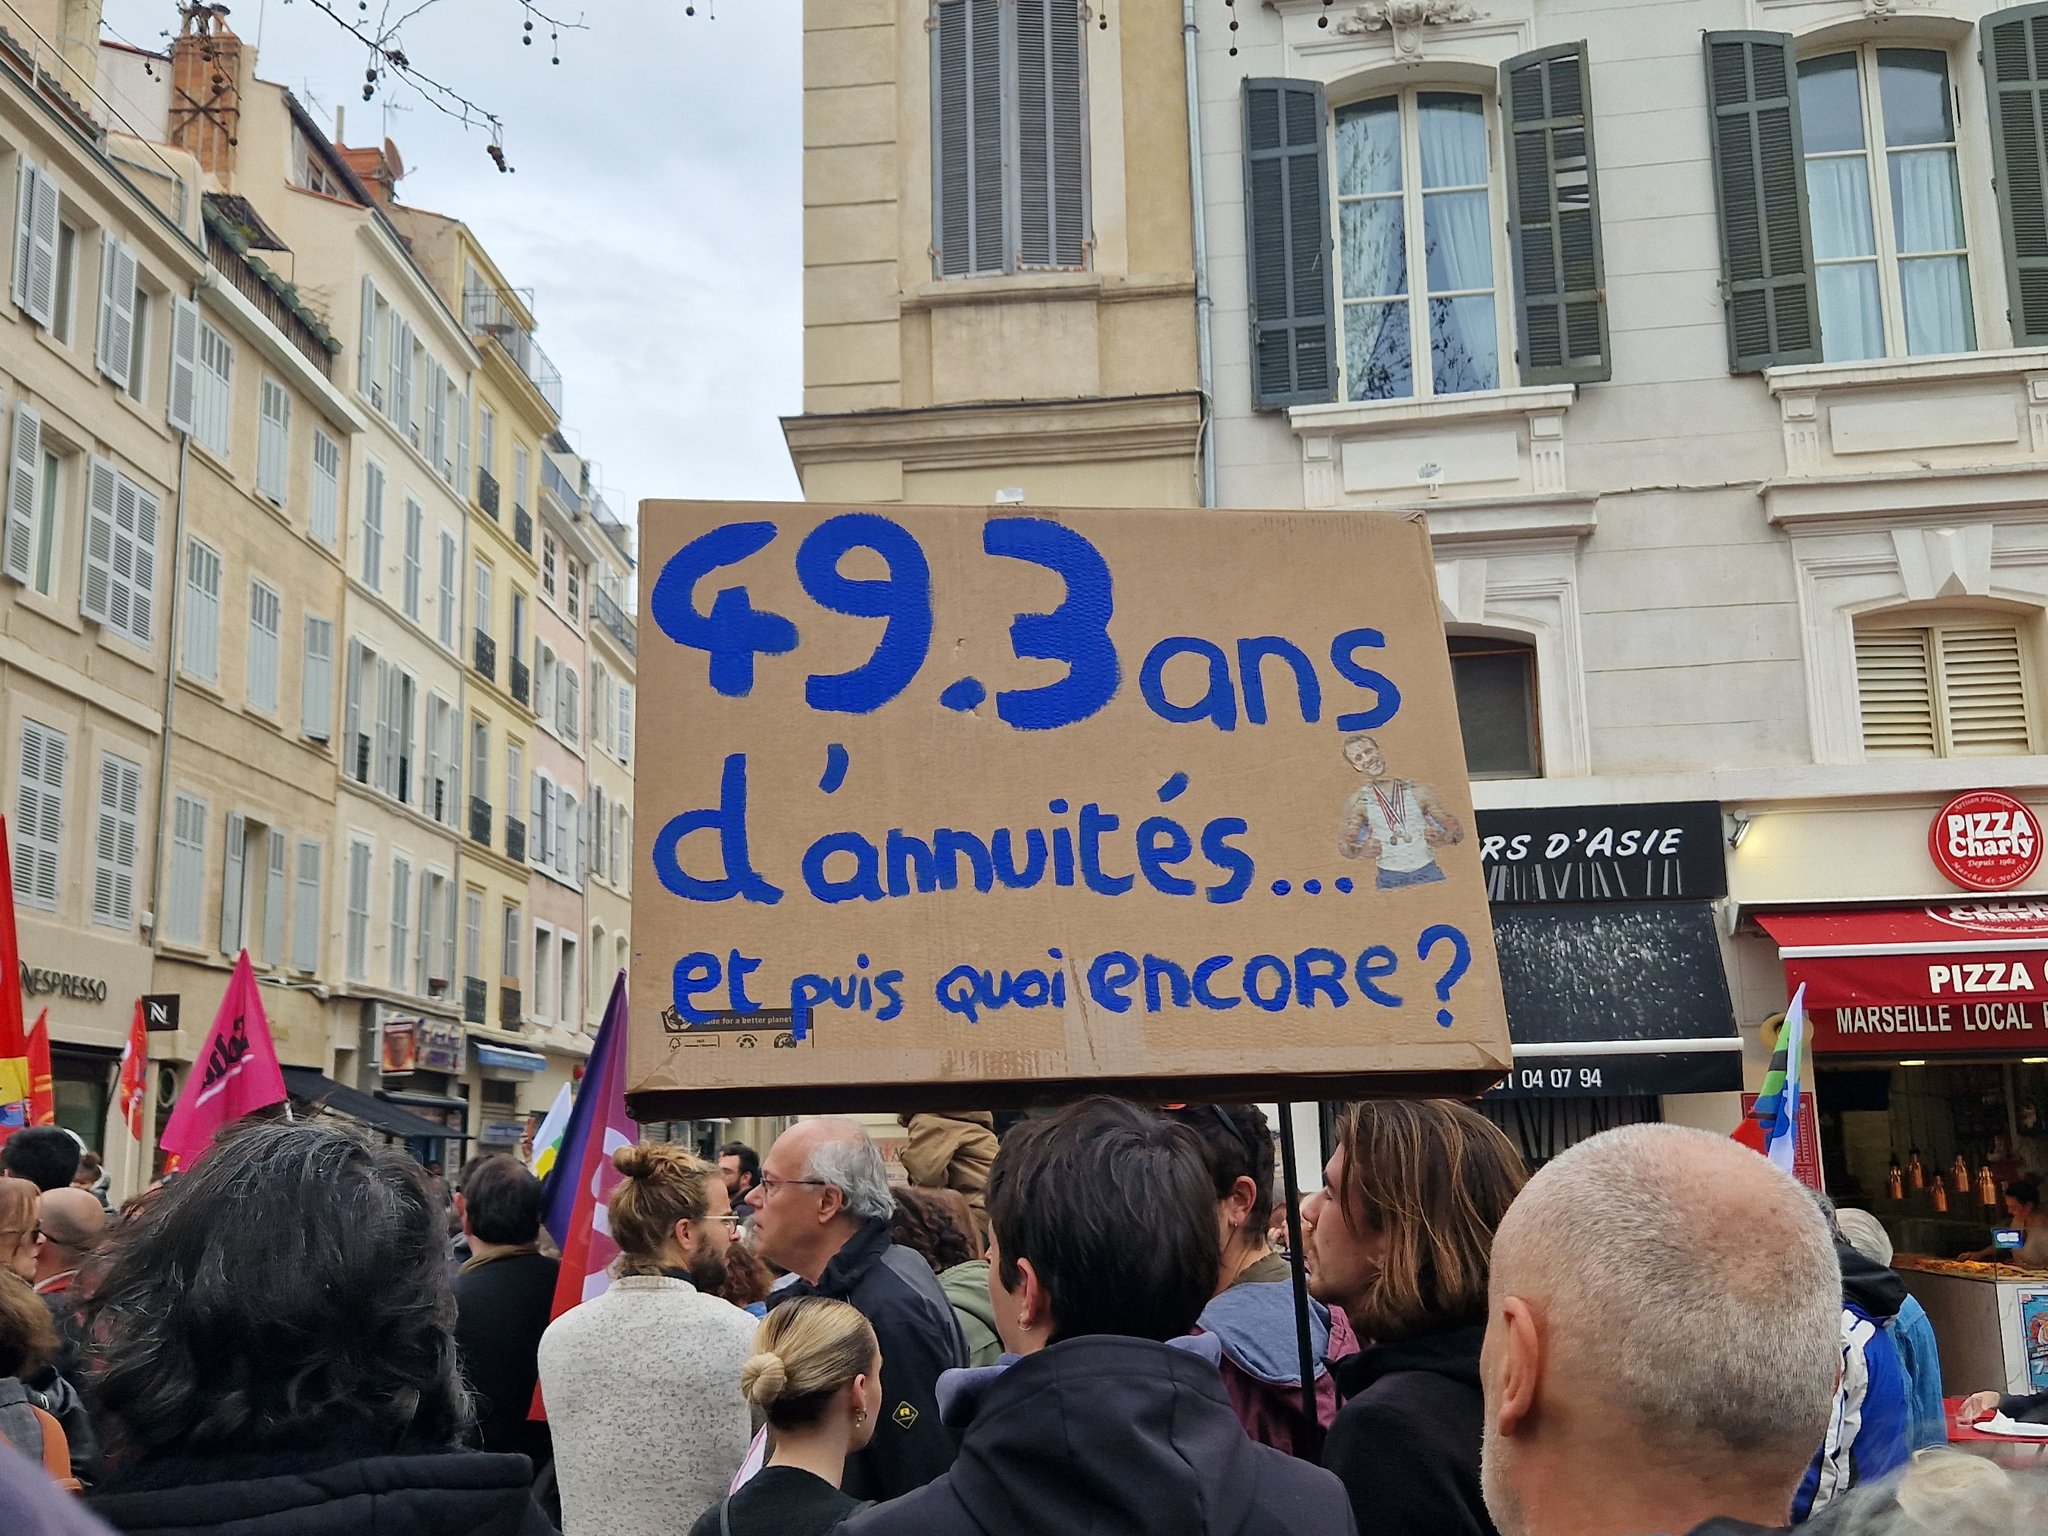 تظاهرات في فرنسا